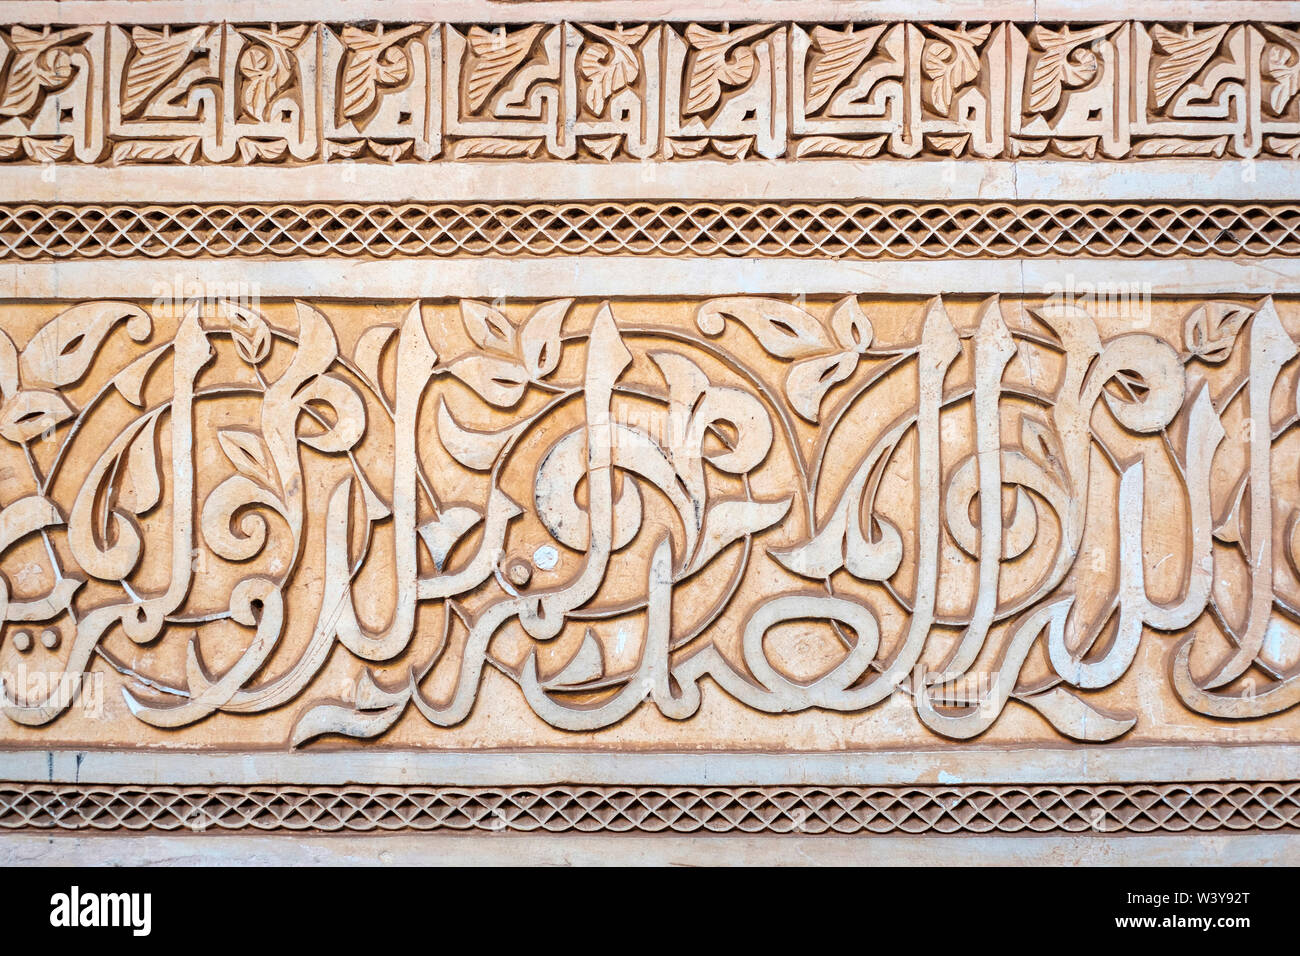 Le Maroc, Marrakech-Safi Marrakesh-Tensift-El Haouz (région), Marrakech. Plâtre sculpté la calligraphie arabe, Medersa Ben Youssef, 16e siècle Collège islamique. Banque D'Images